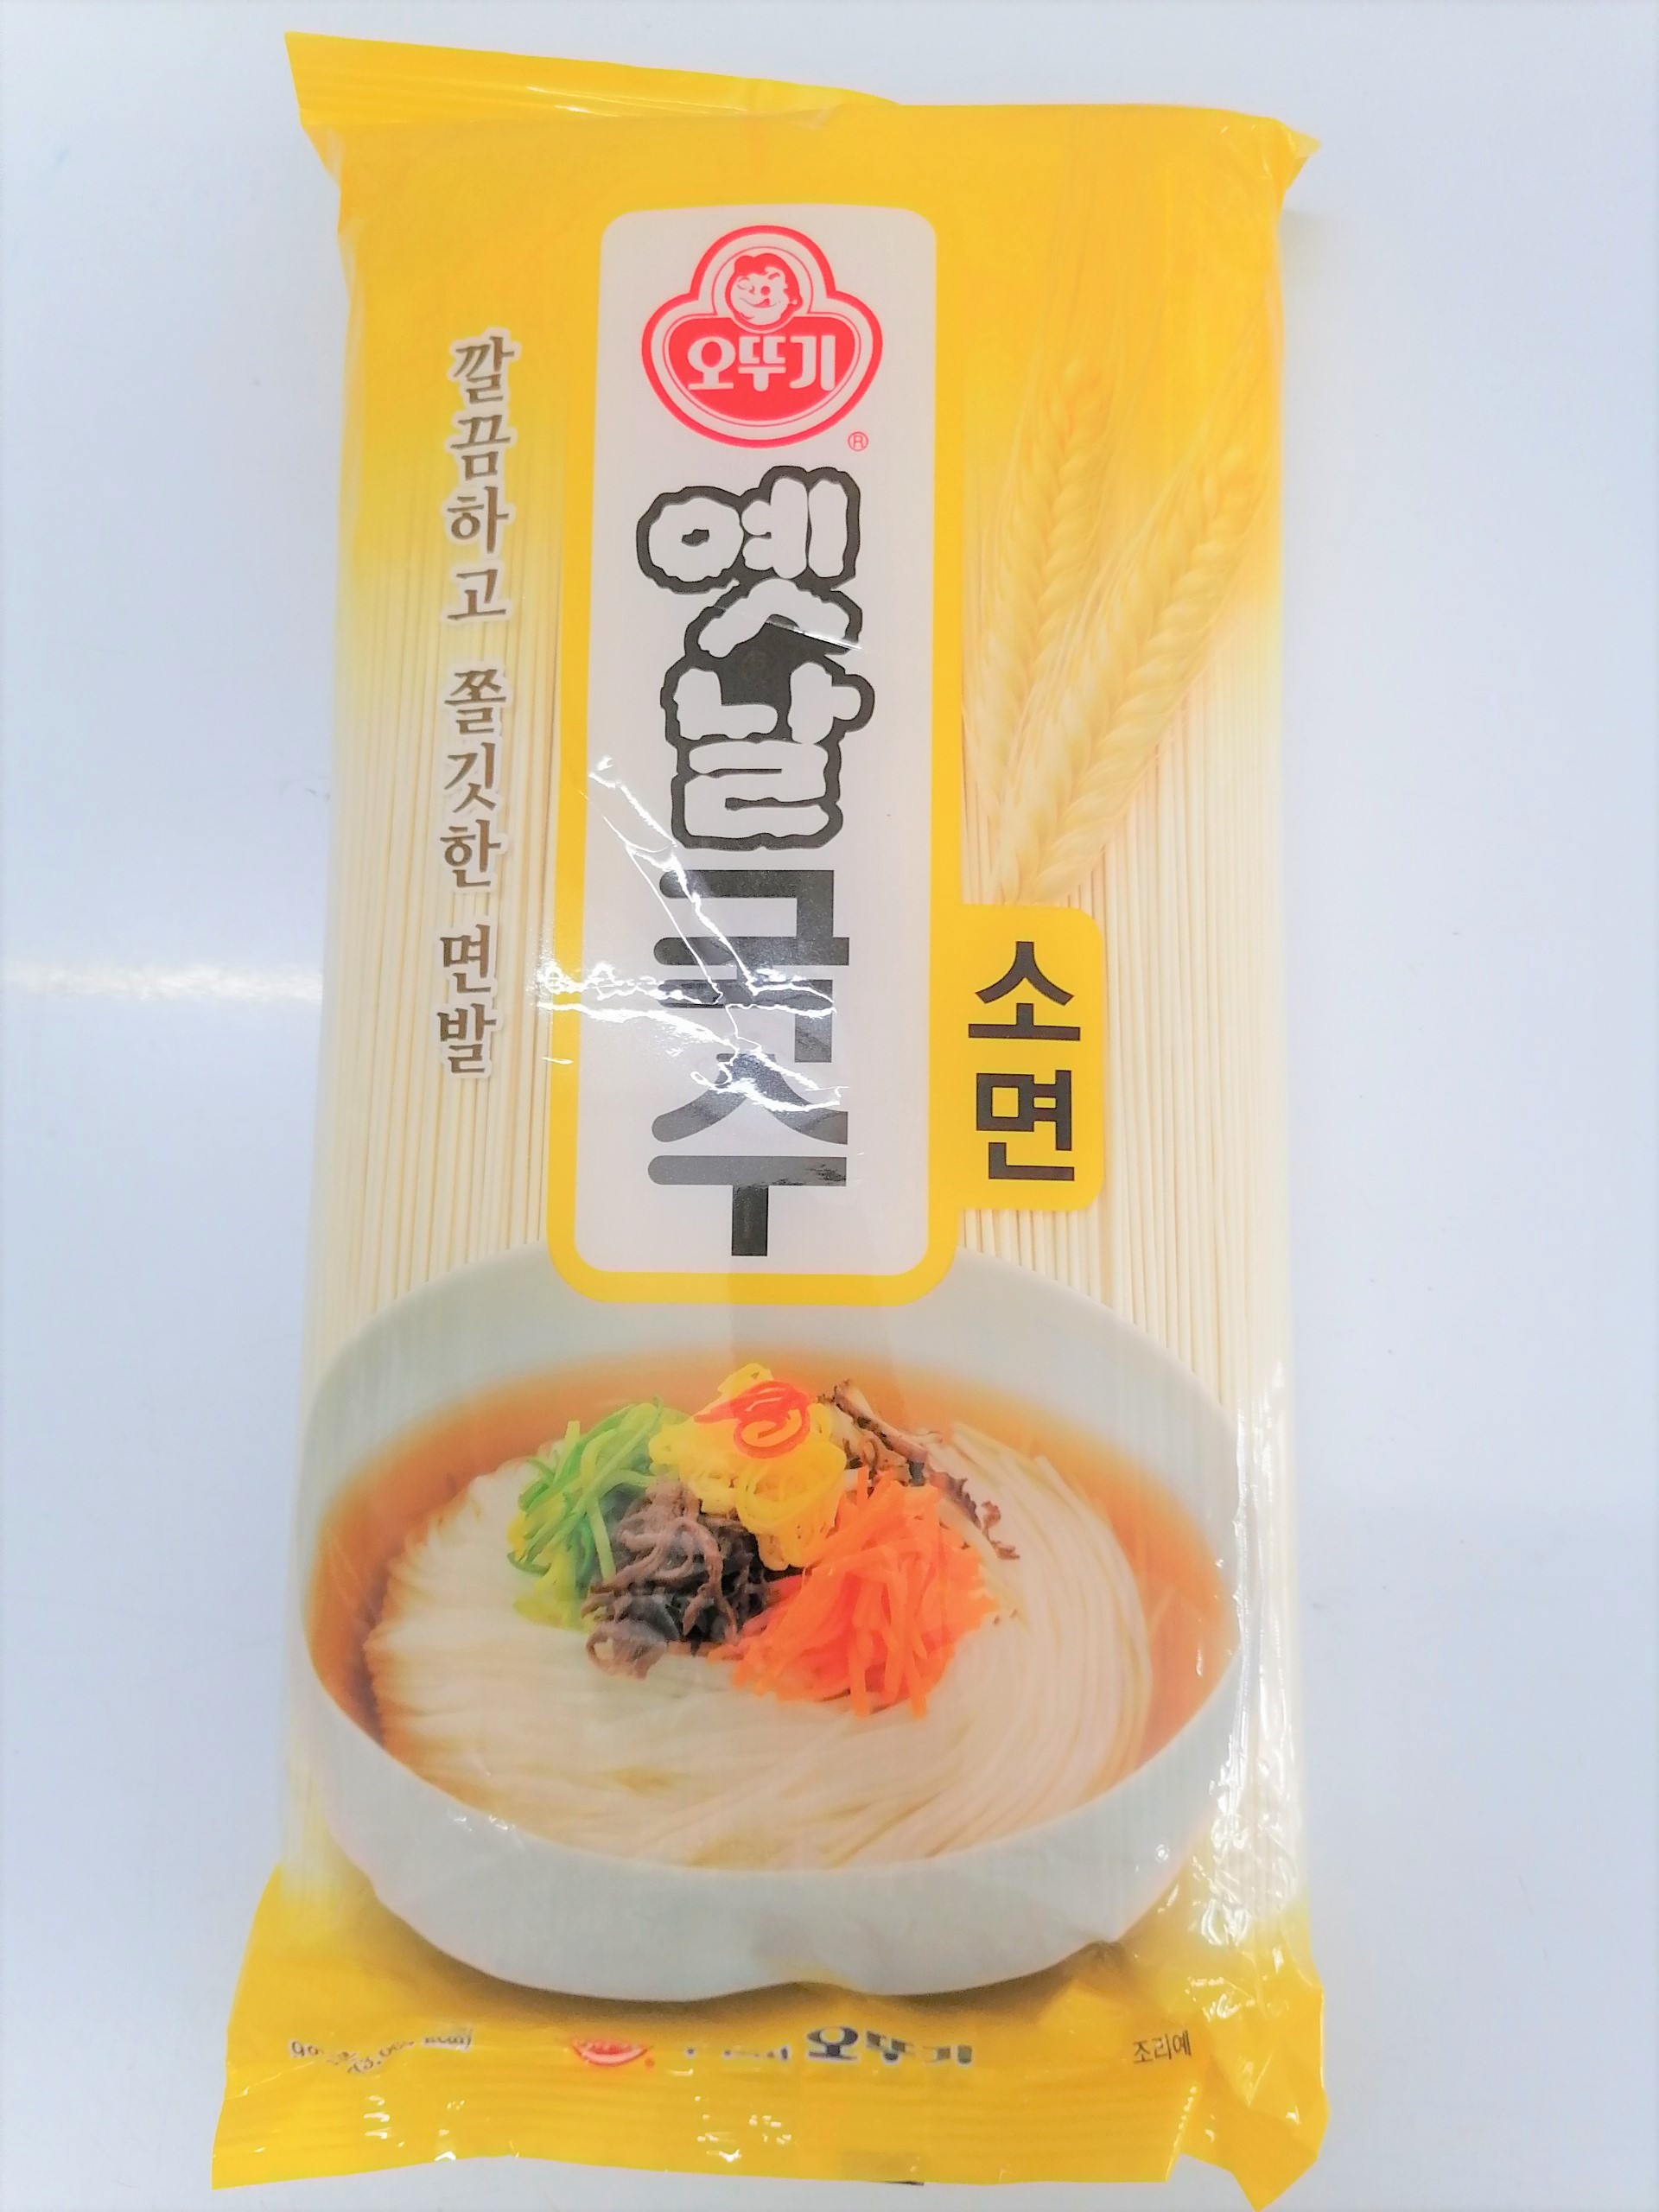 Hình ảnh [Gói 900g] MÌ SỢI NHỎ [Korea] OTTOGI Wheat Noodle Thin Round (bph-hk)